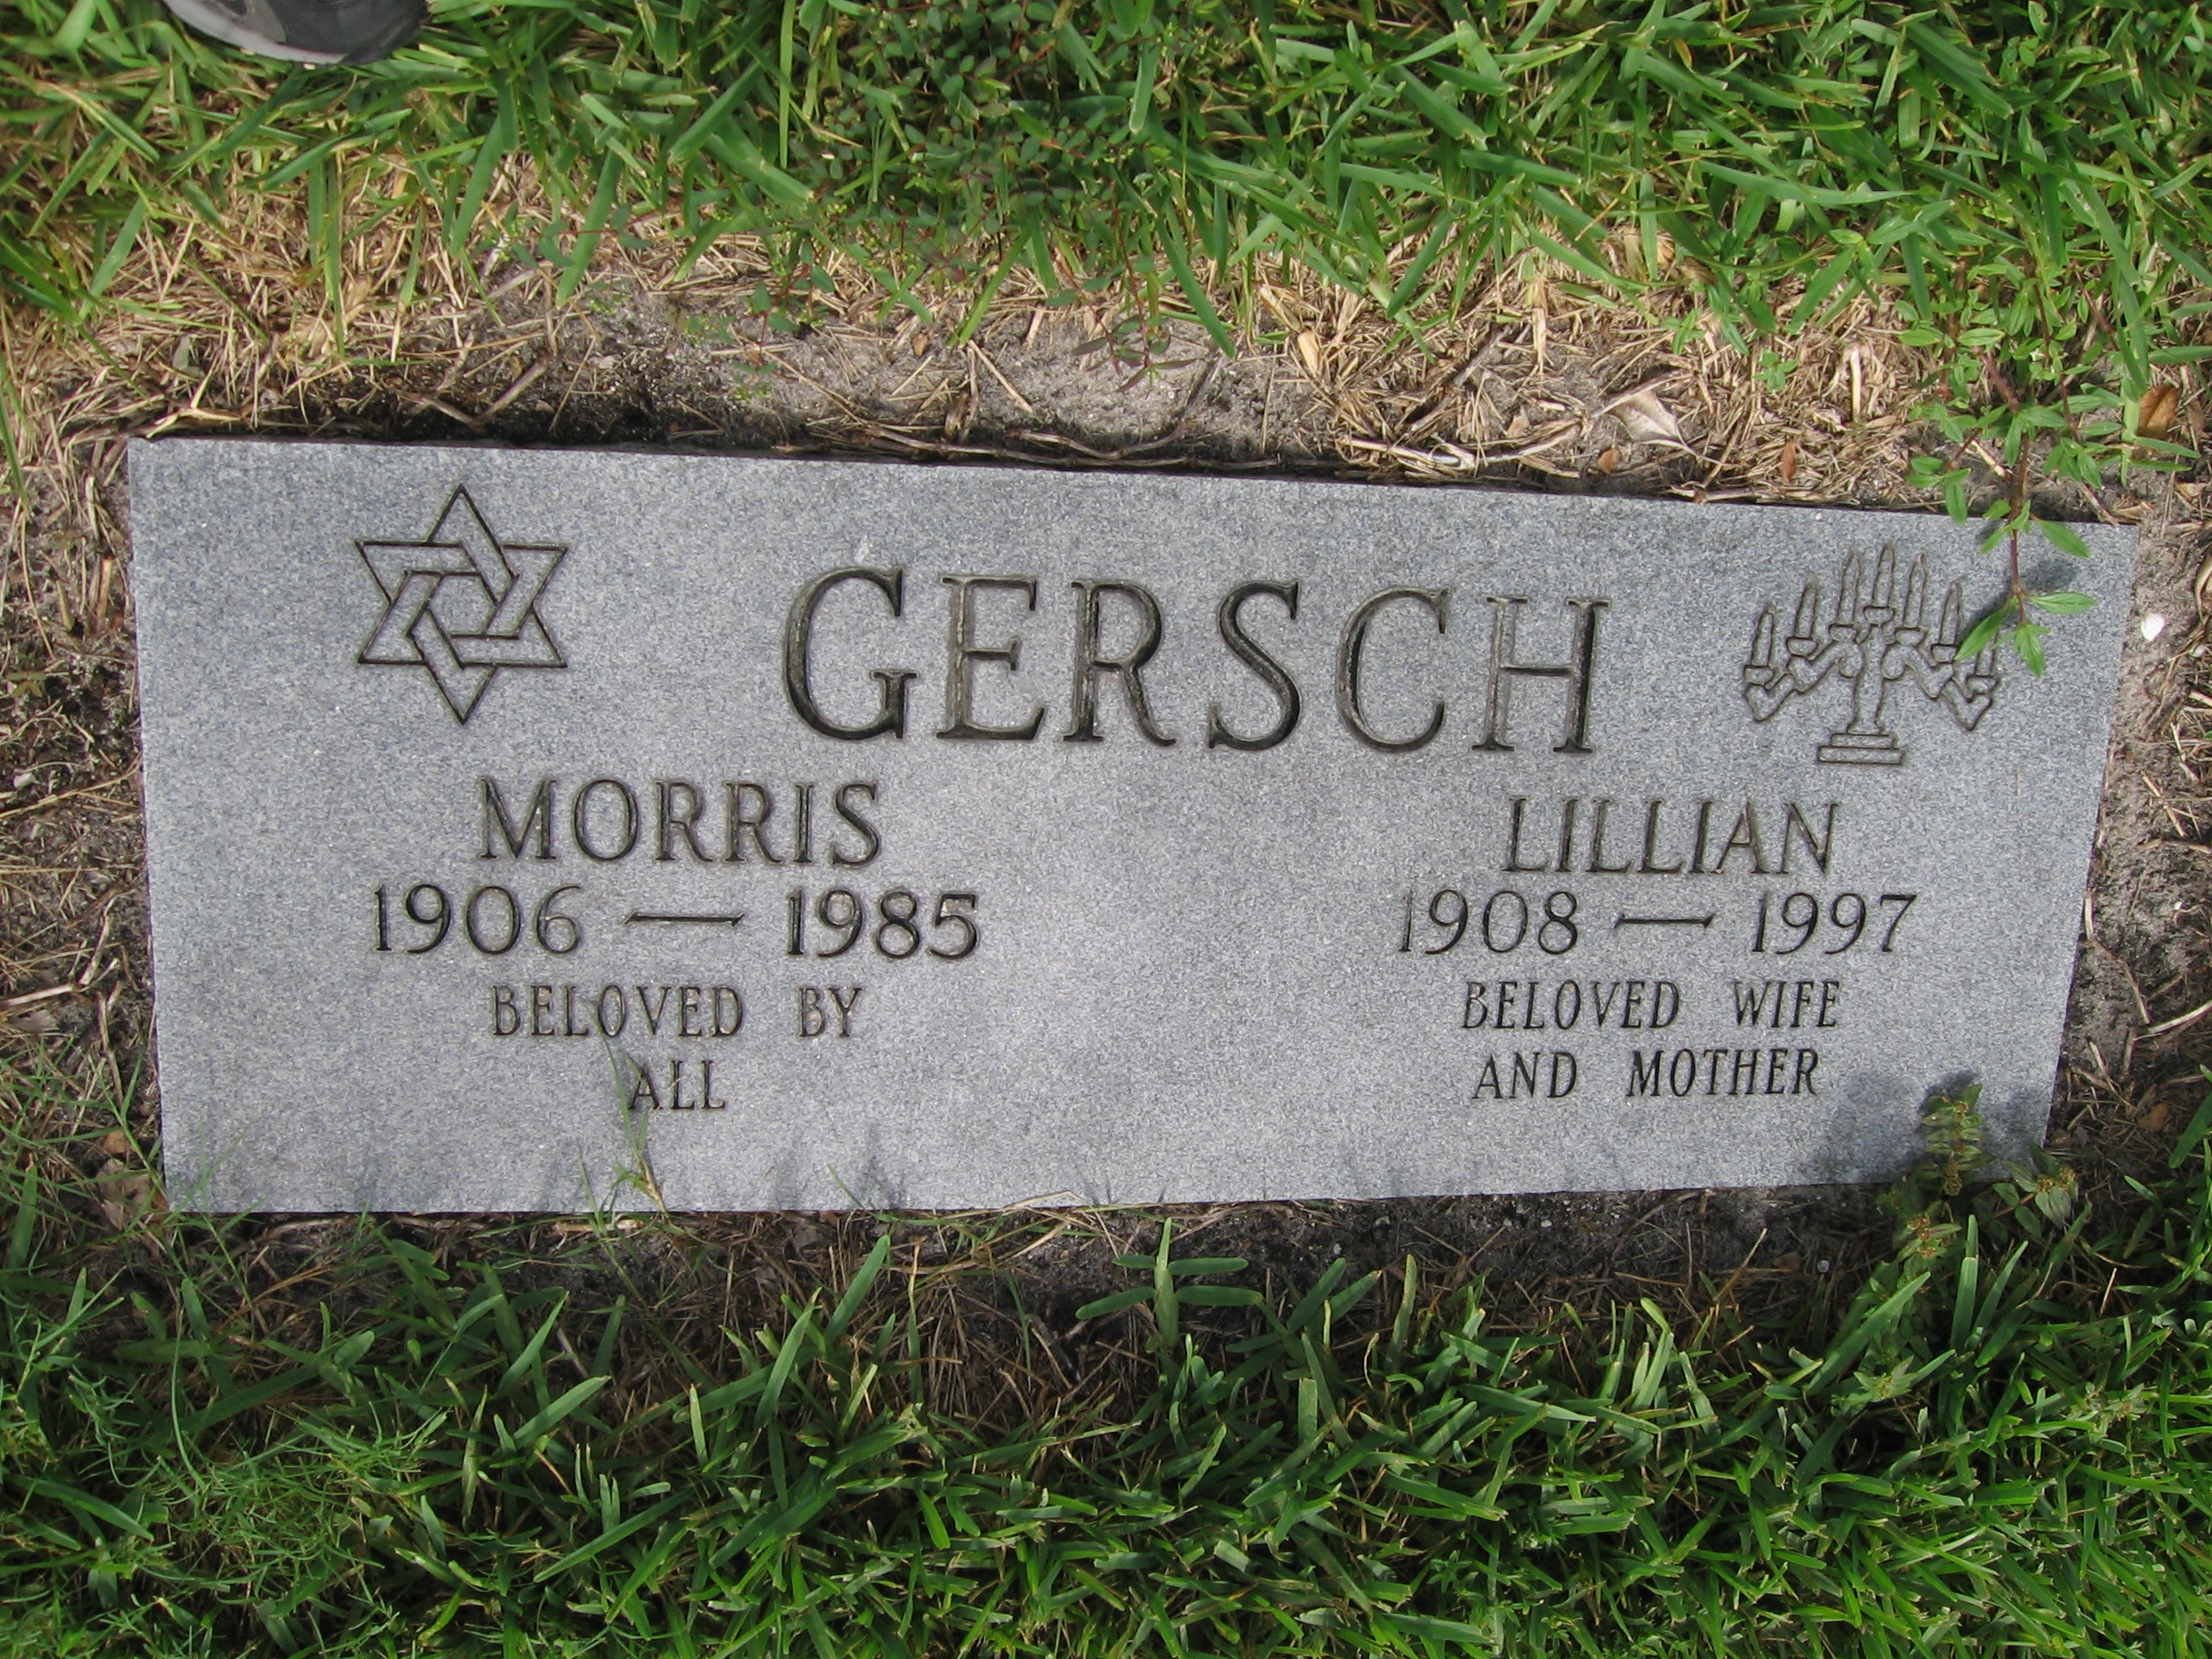 Lillian Gersch